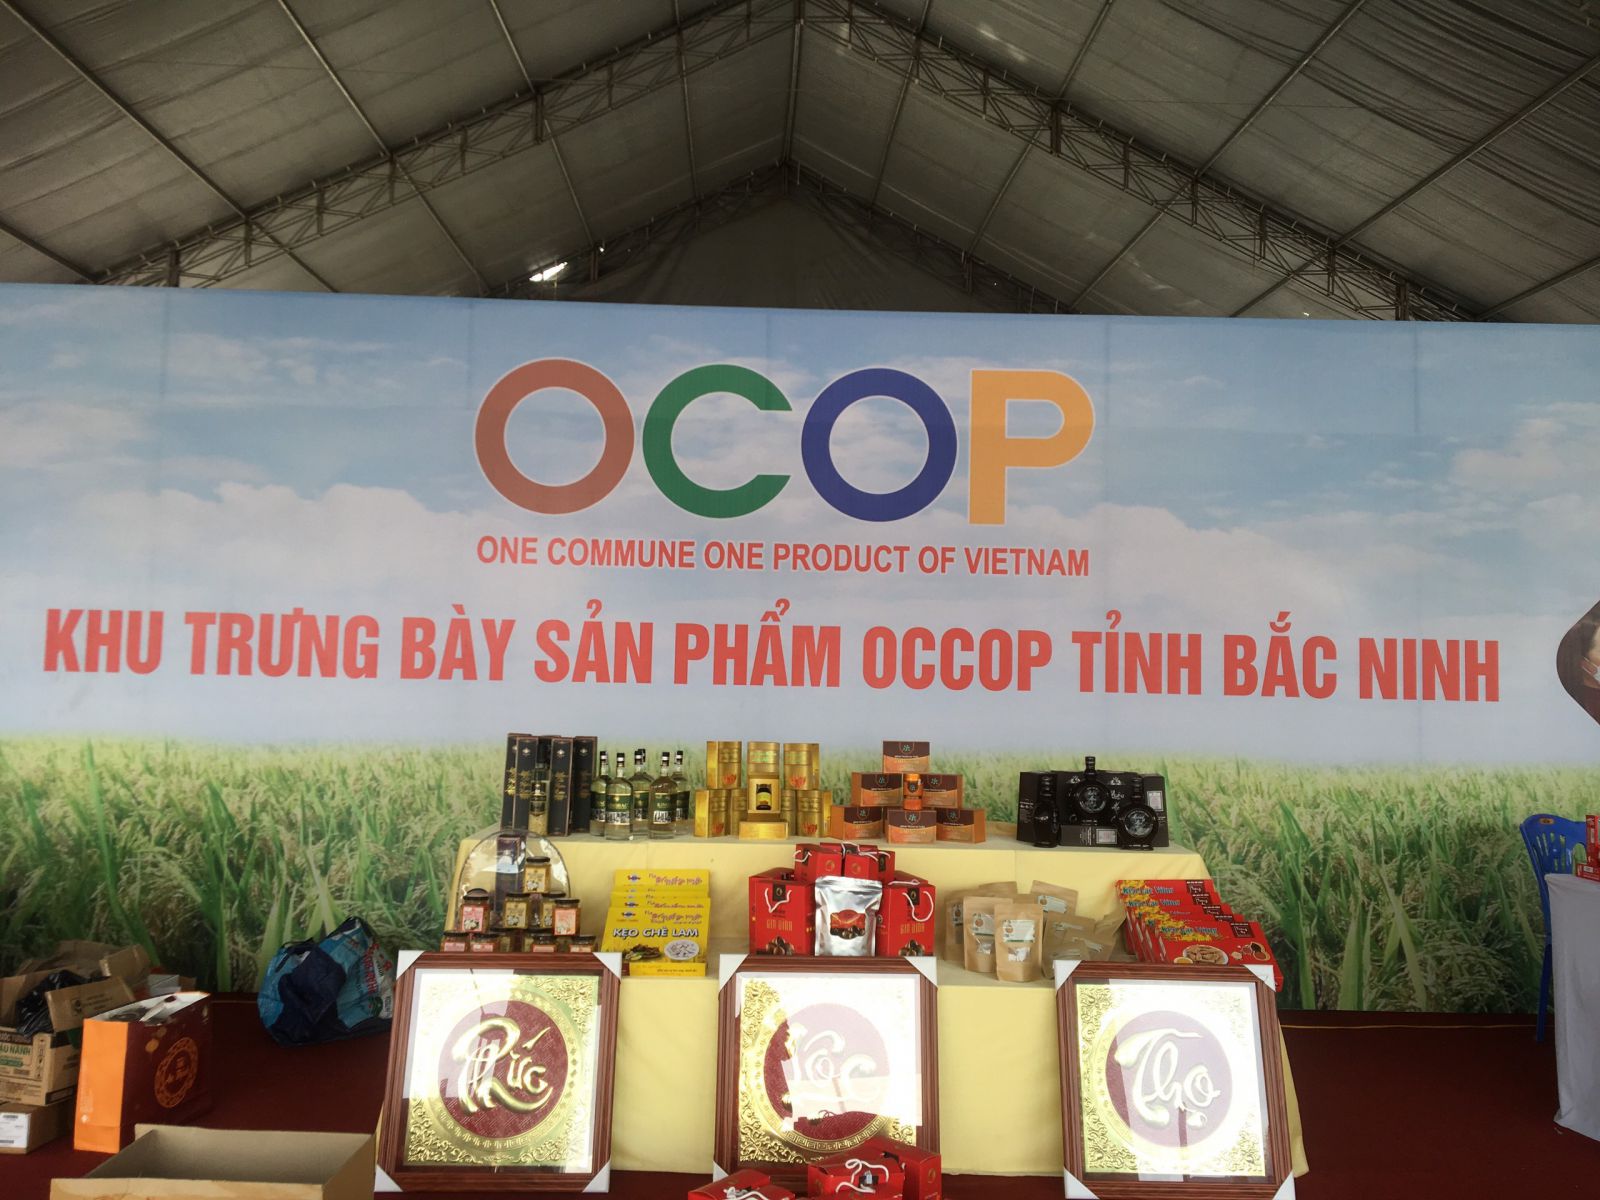 Các sản phẩm OCOP tỉnh Bắc Ninh đạt 3 sao và 4 sao. (Ảnh: ST)